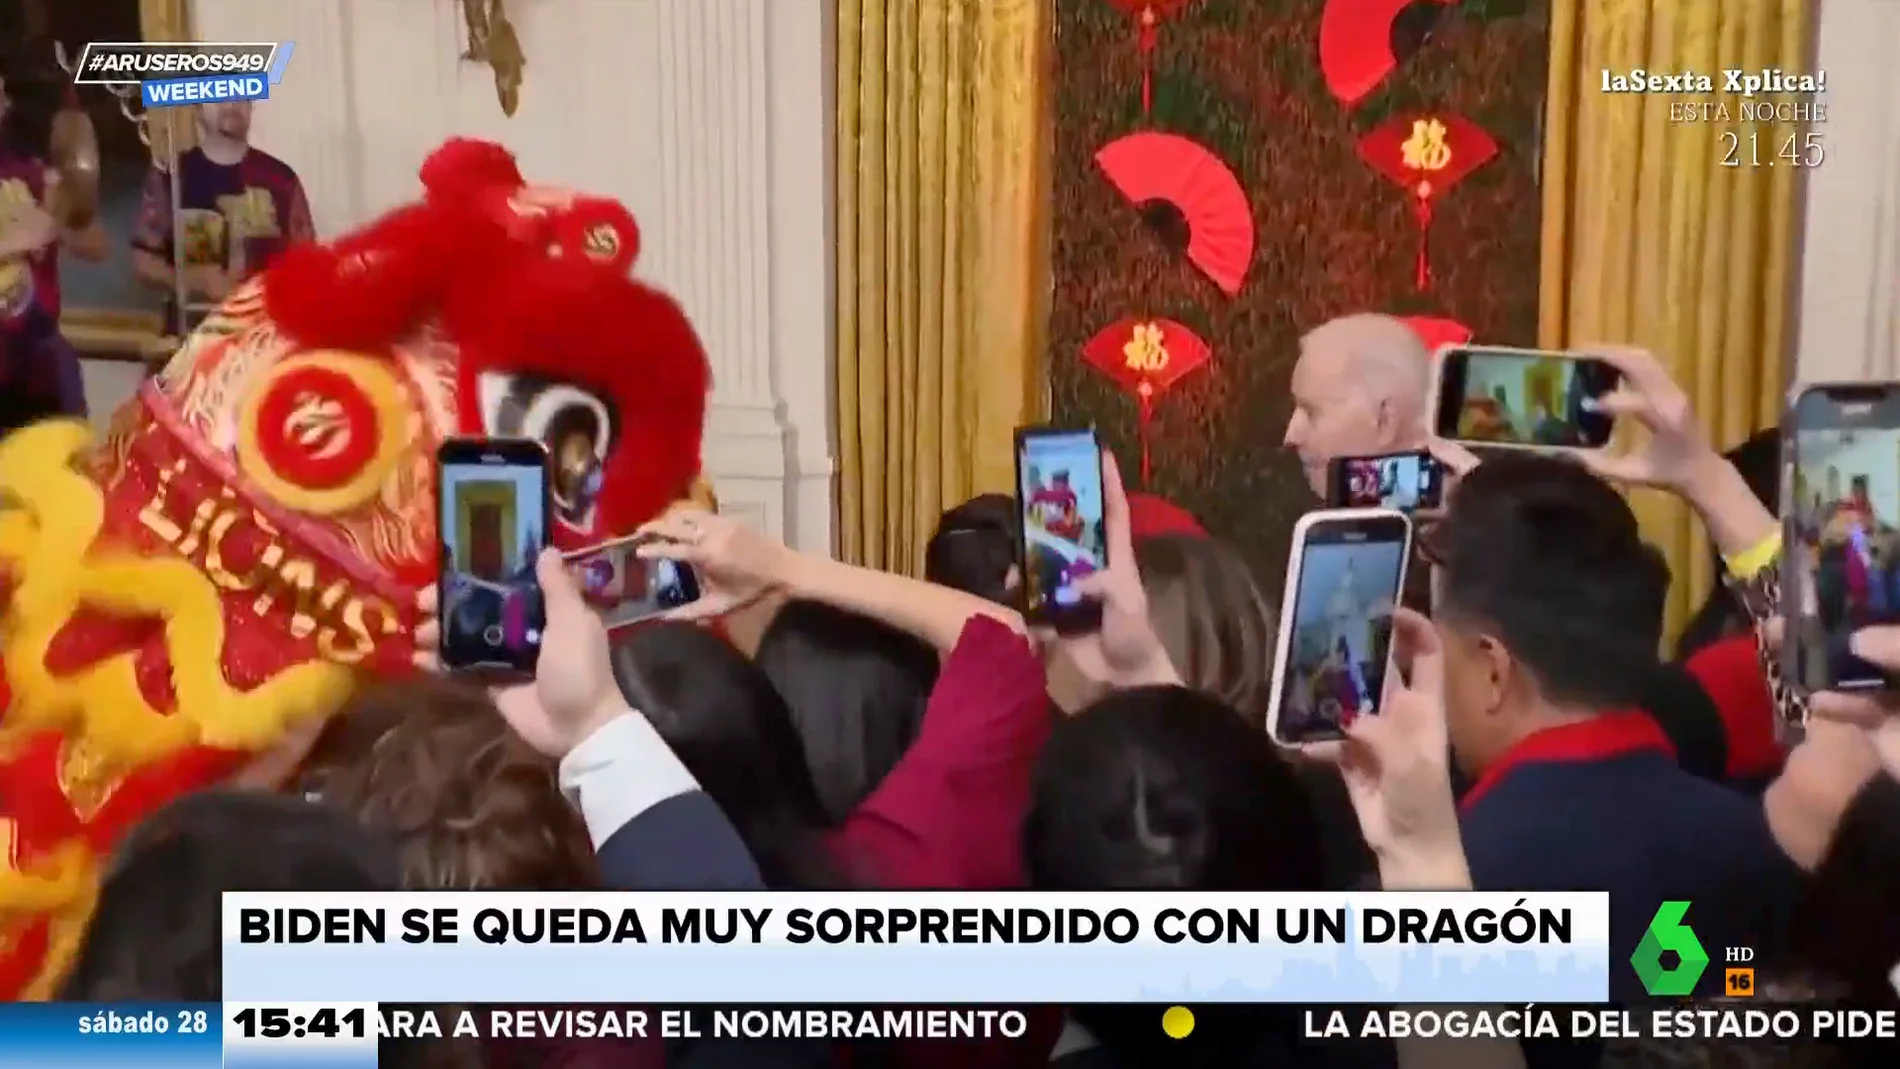 Alfonso Arús comenta la reacción de Joe Biden ante un dragón bailarín: "Es una escena digna de Barrio Sésamo"